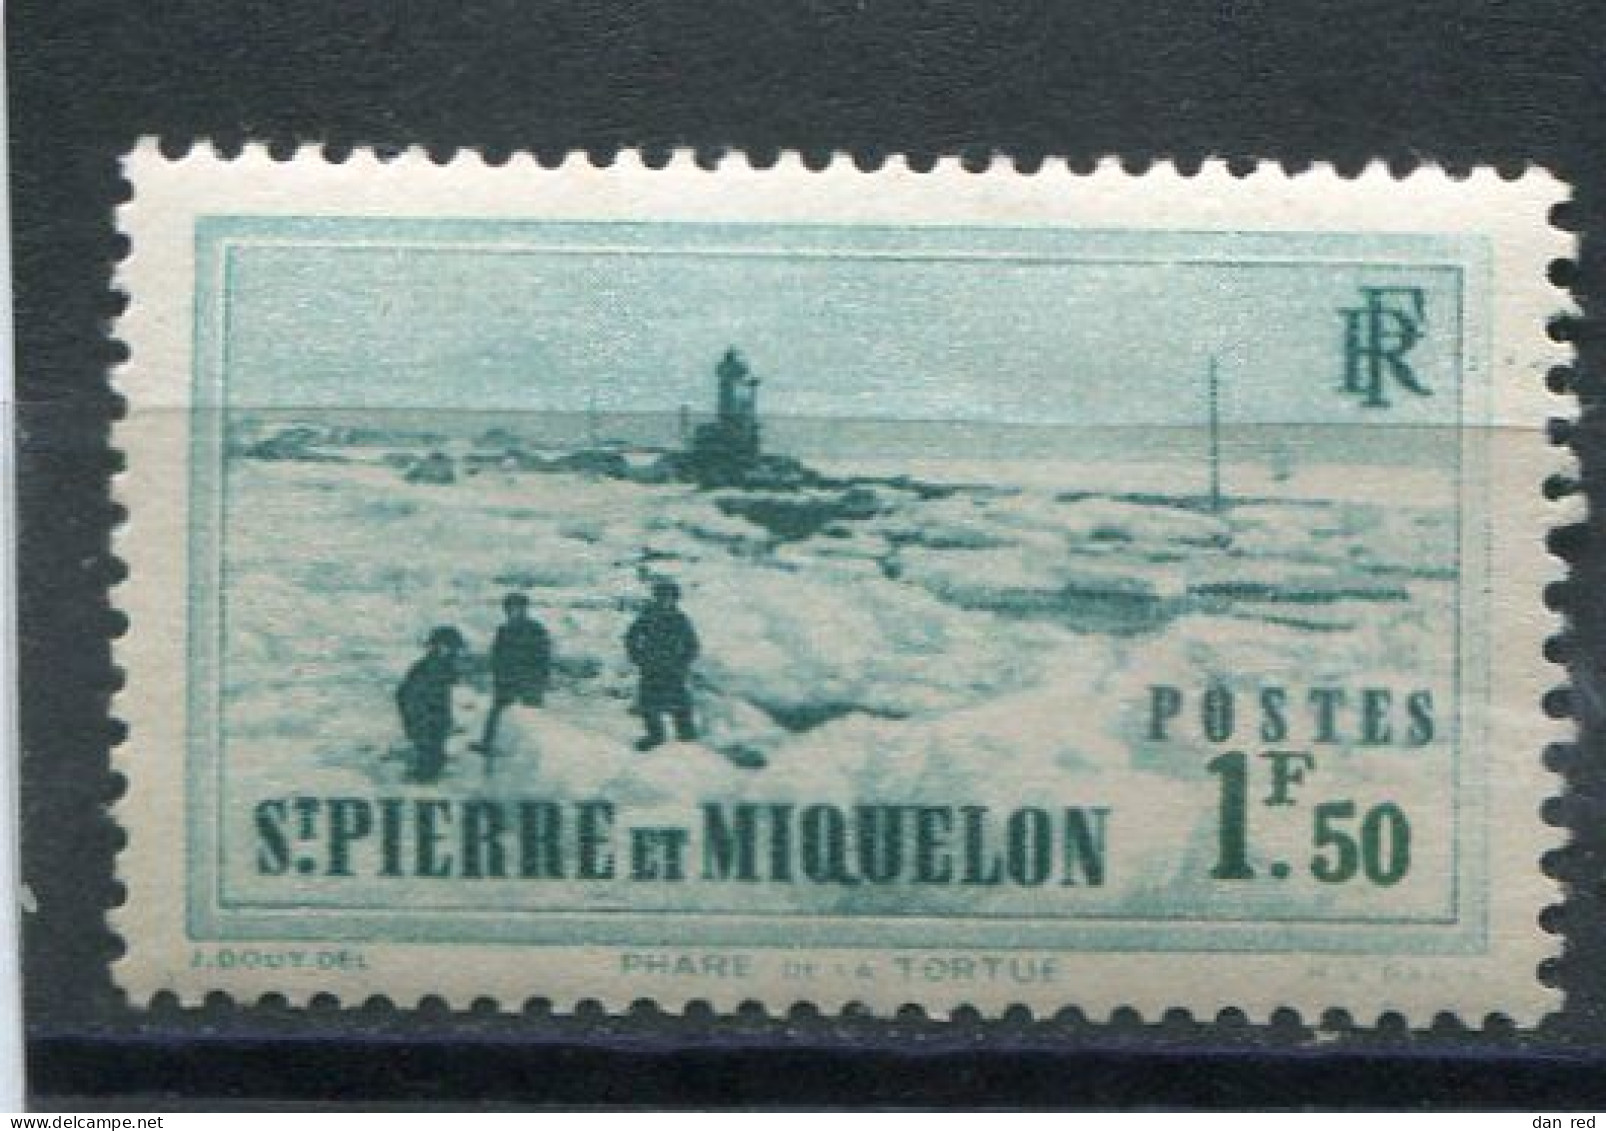 SAINT-PIERRE ET MIQUELON N° 182 ** (Y&T) (Neuf) - Unused Stamps